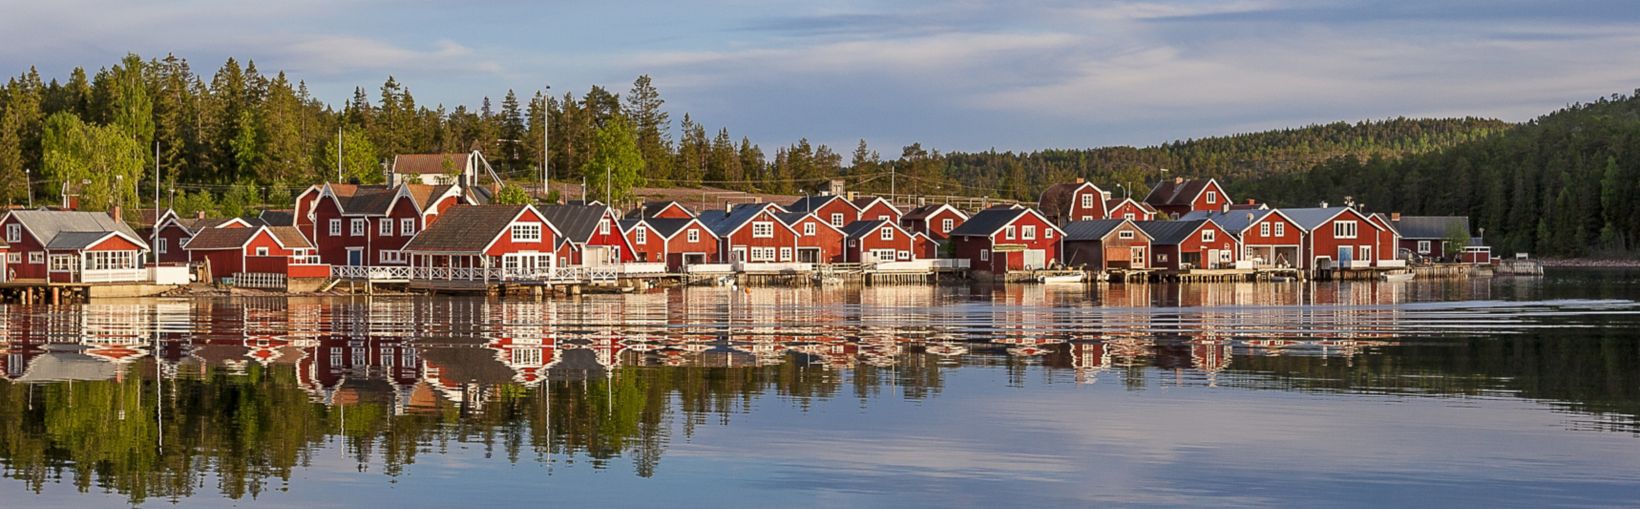 sarkanās mājas saulrietā zvejnieku ciematā Norfaellsviken, Höga Kusten, Zviedrija